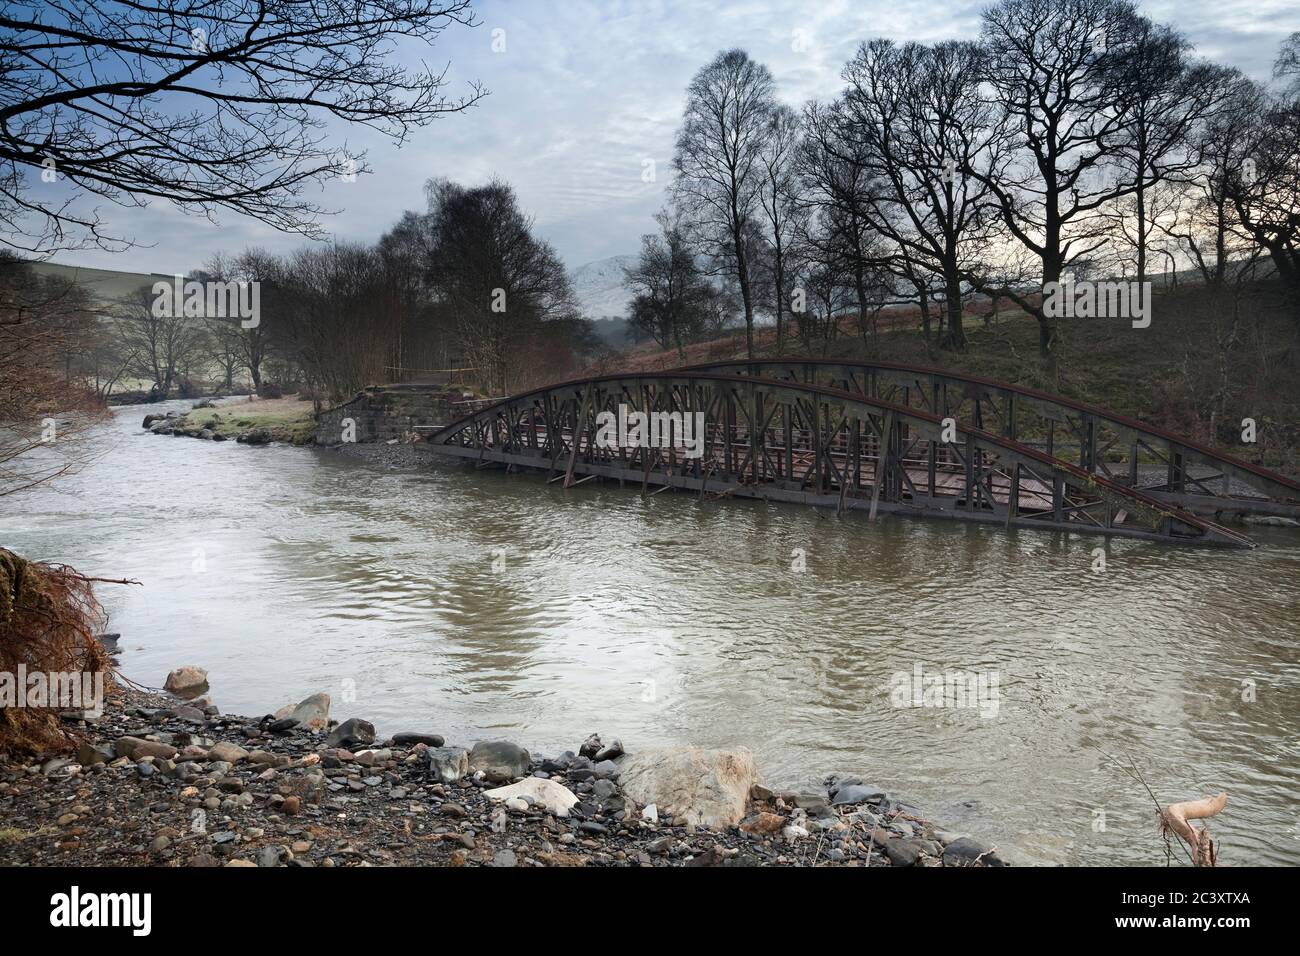 Collapsed bridge over River Greta after Storm Desmond hit Cumbria in 2015 Stock Photo